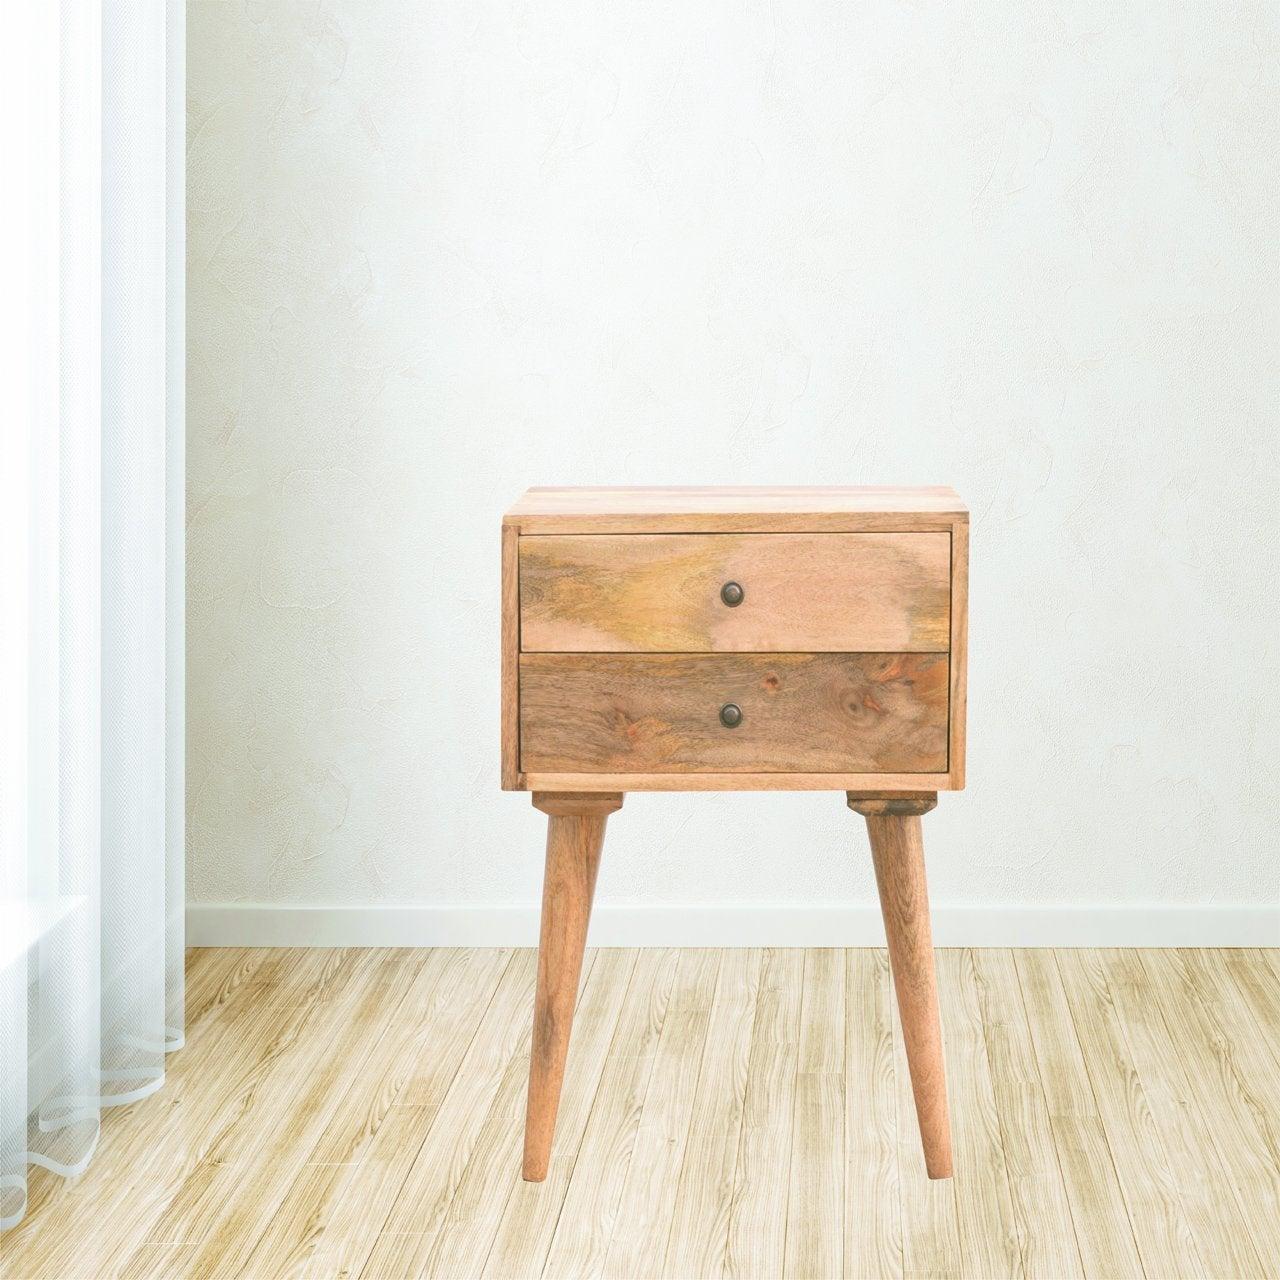 Modern solid wood bedside table - crimblefest furniture - image 3